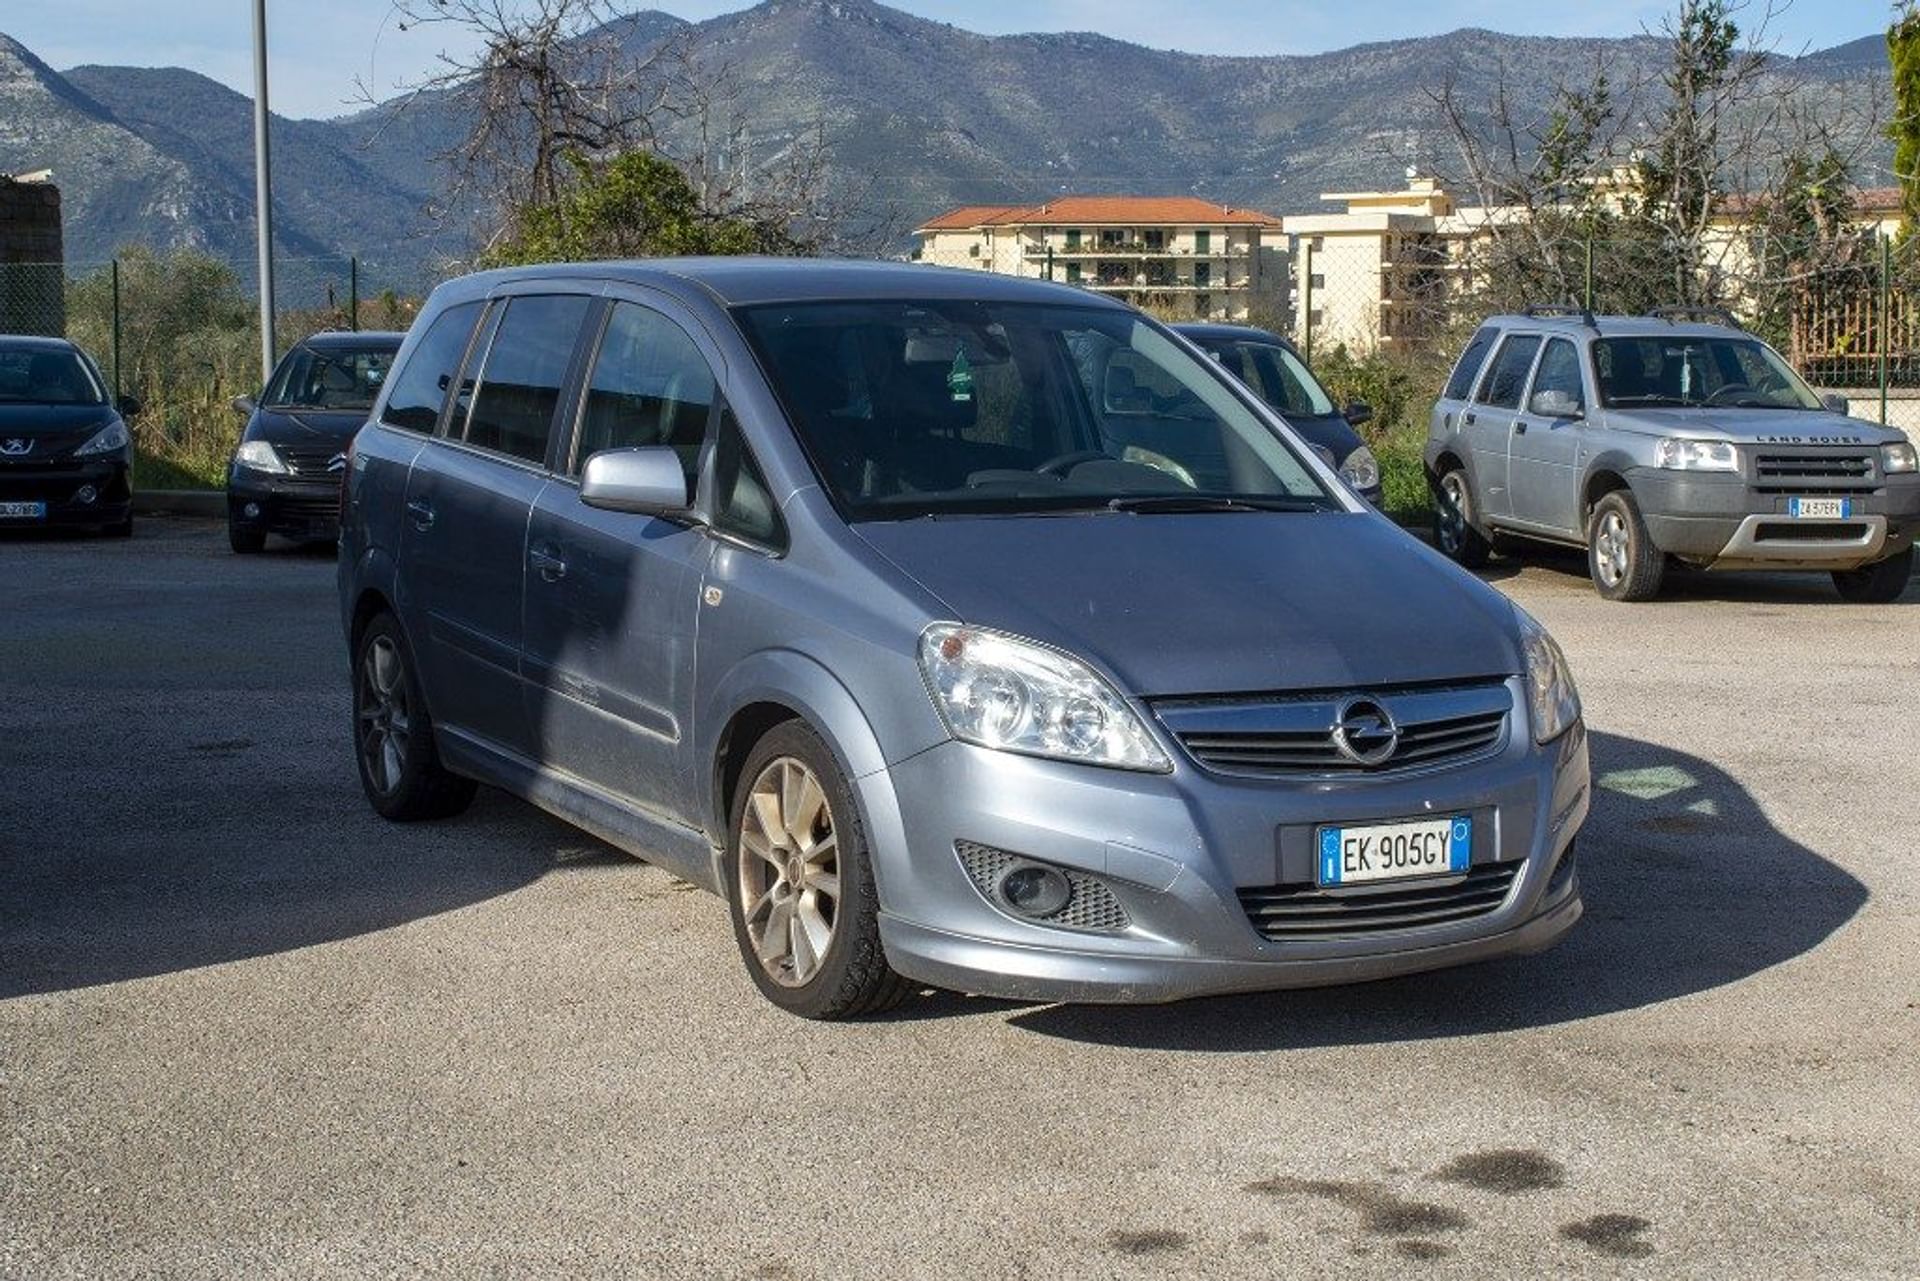 Opel Zafira 1.7 CDTI 110CV